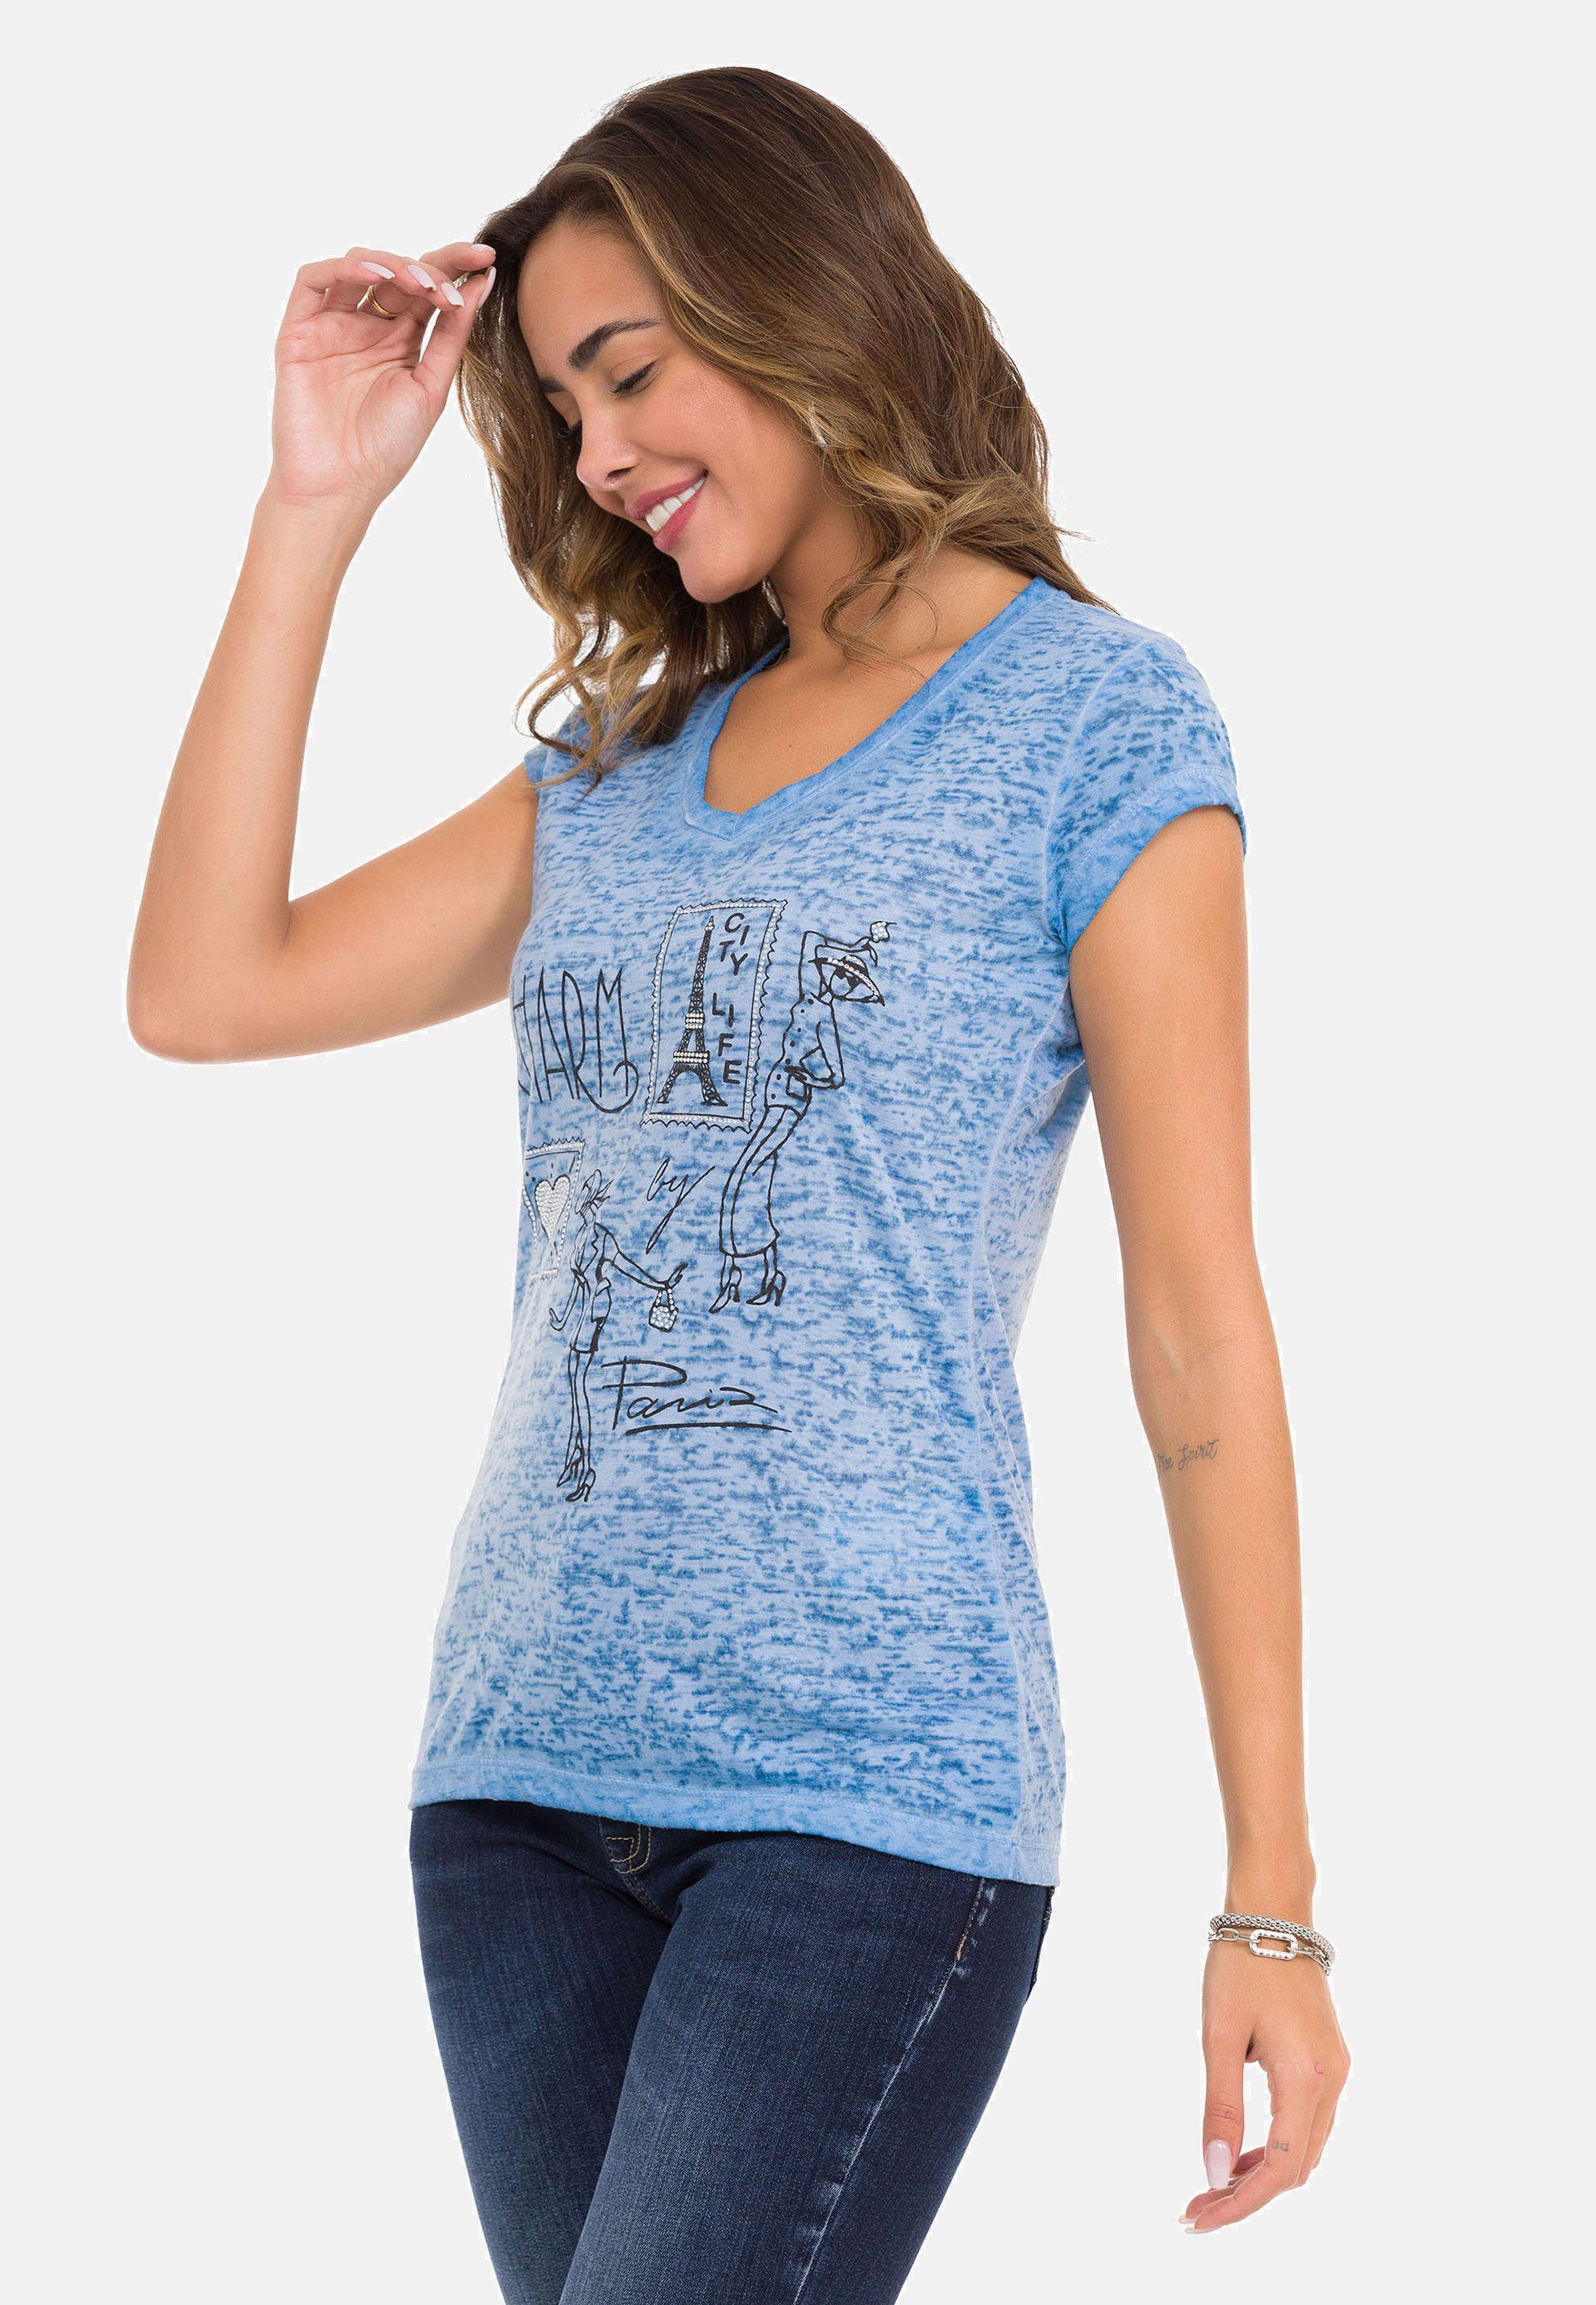 Designer-Look & tollen Cipo blau T-Shirt im Baxx